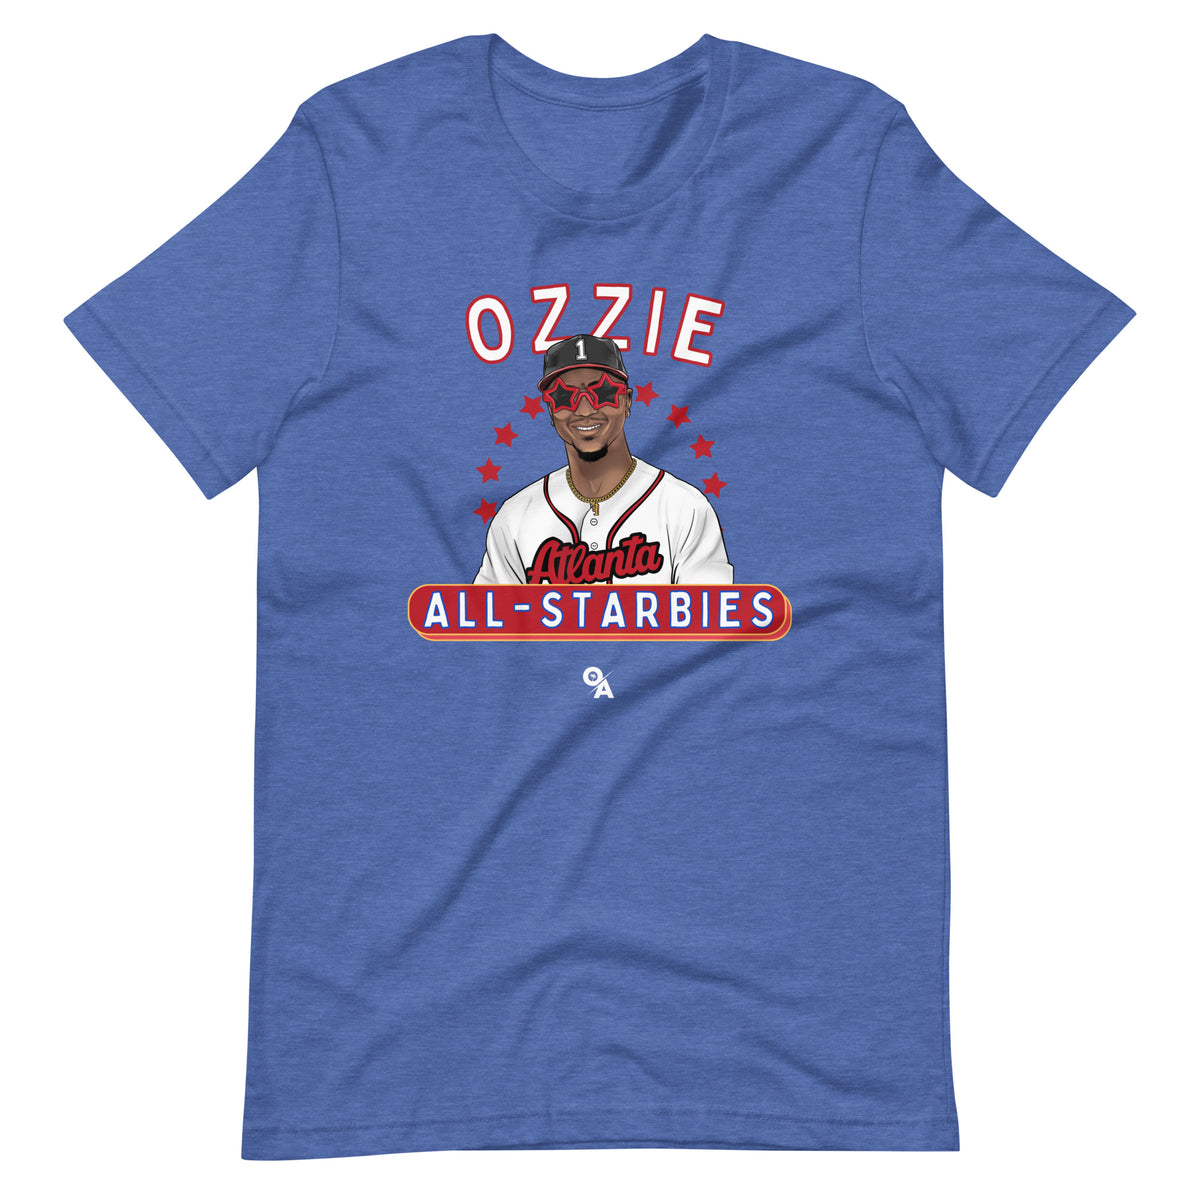 Ozzie Albies Foundation T-Shirt